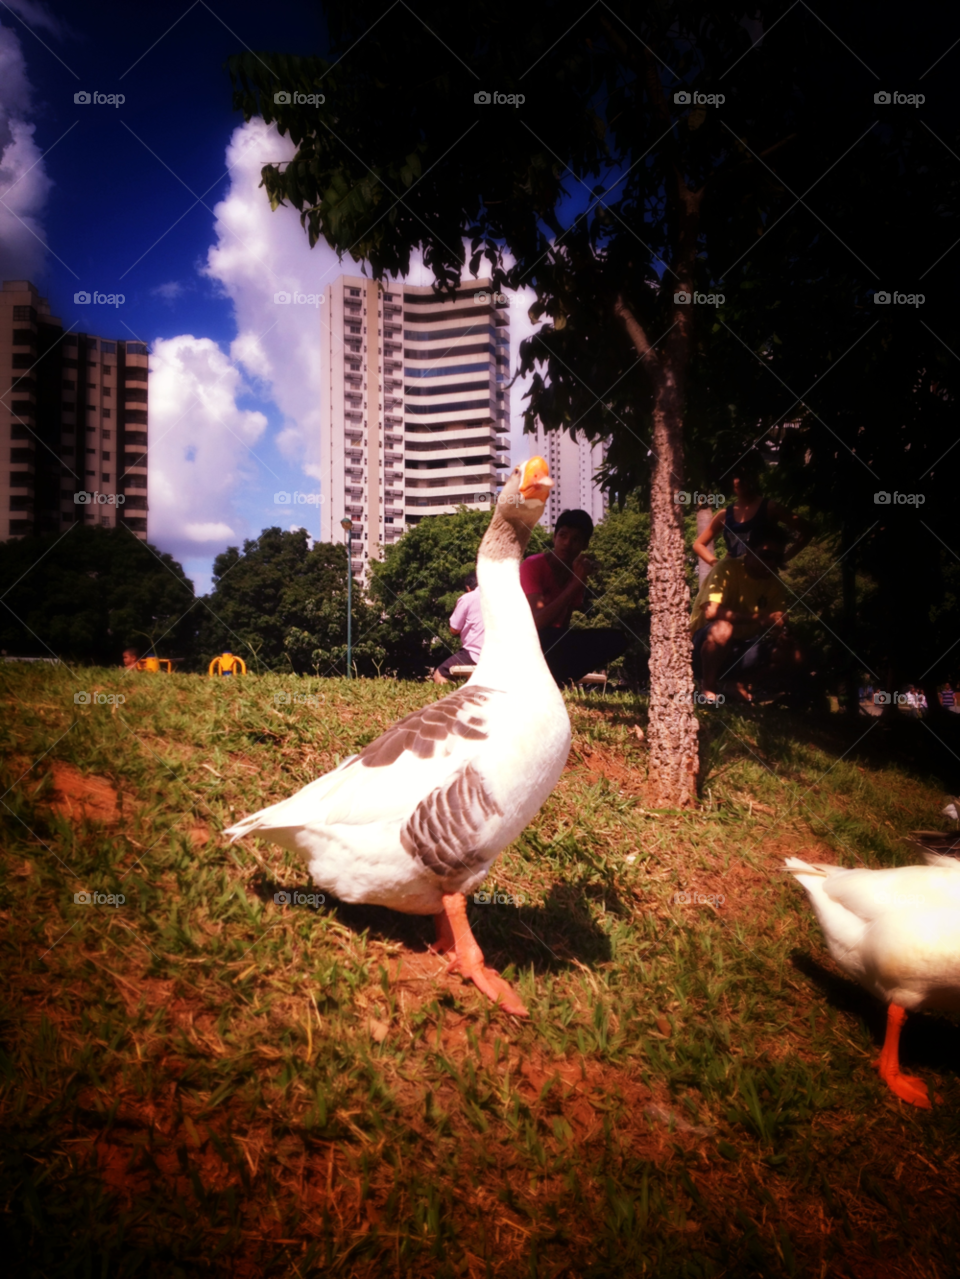 park goose goiânia by doras